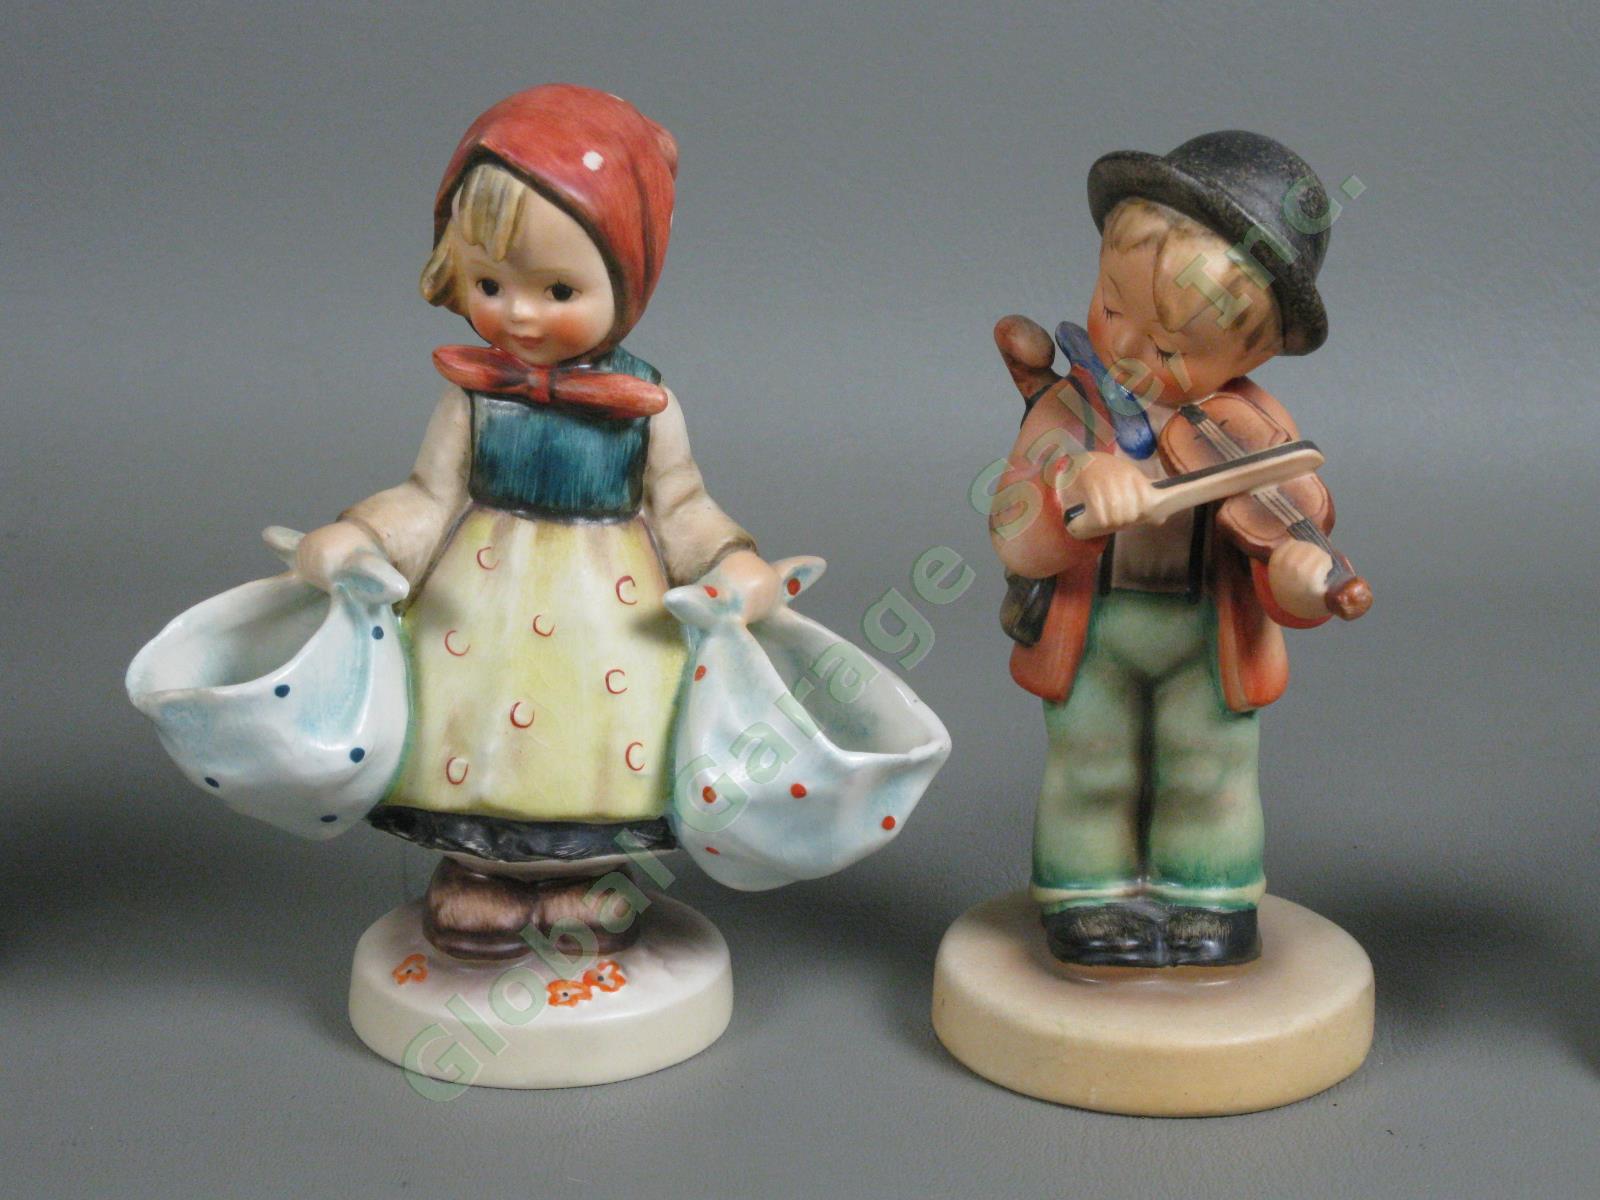 10 Vintage M.I. Hummel Goebel Figurine Lot TMK 2 3 5 6 Figurines Ornaments NR 1